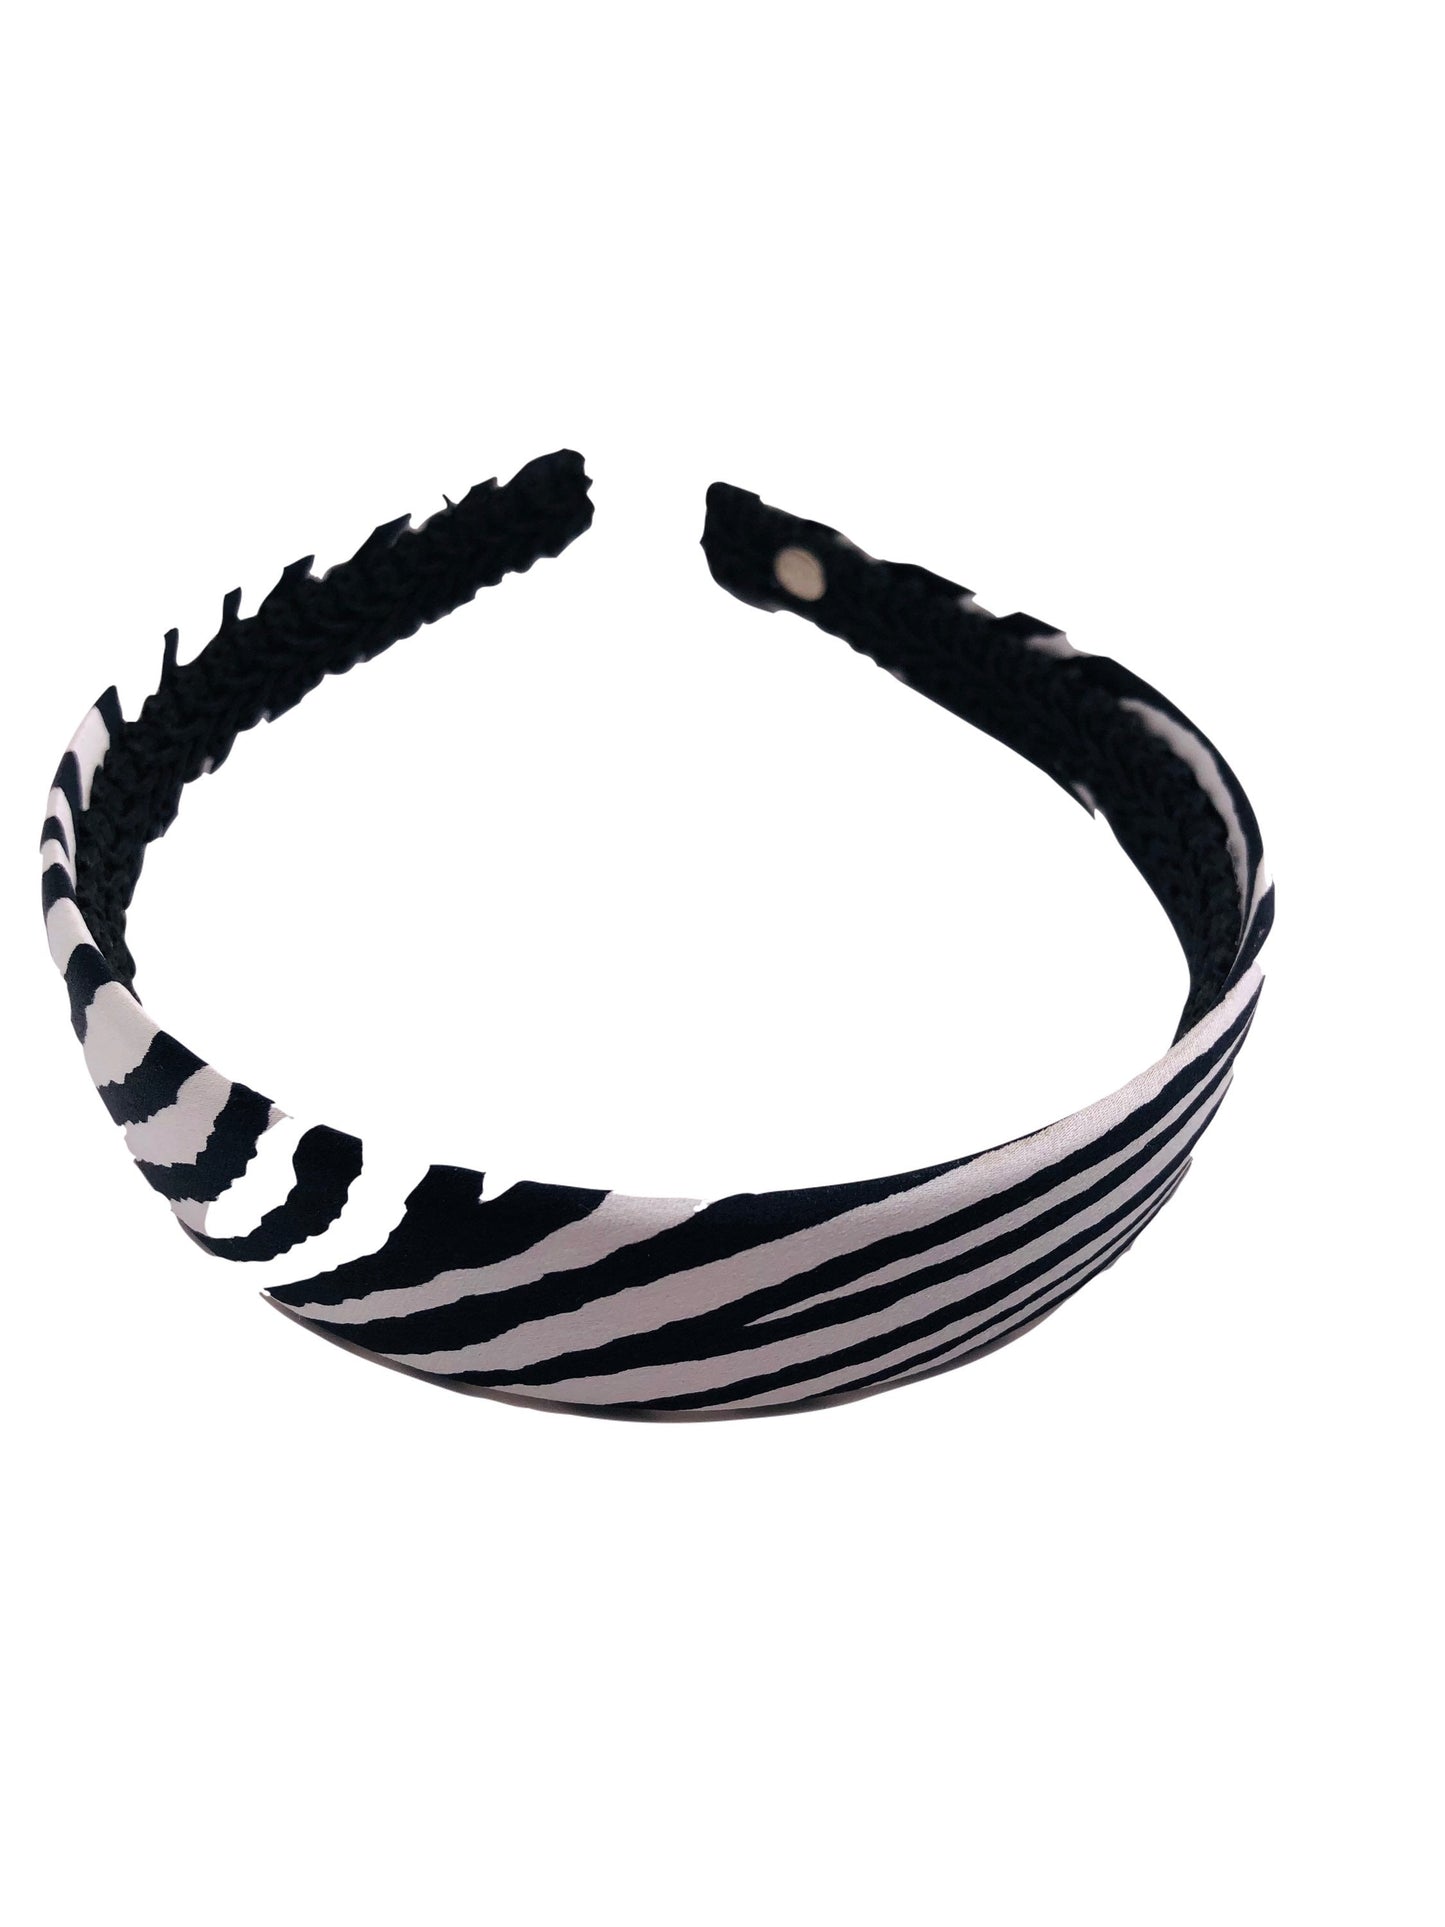 Karin's Garden 1" Zebra Print Silk Headband.  Handmade in the USA